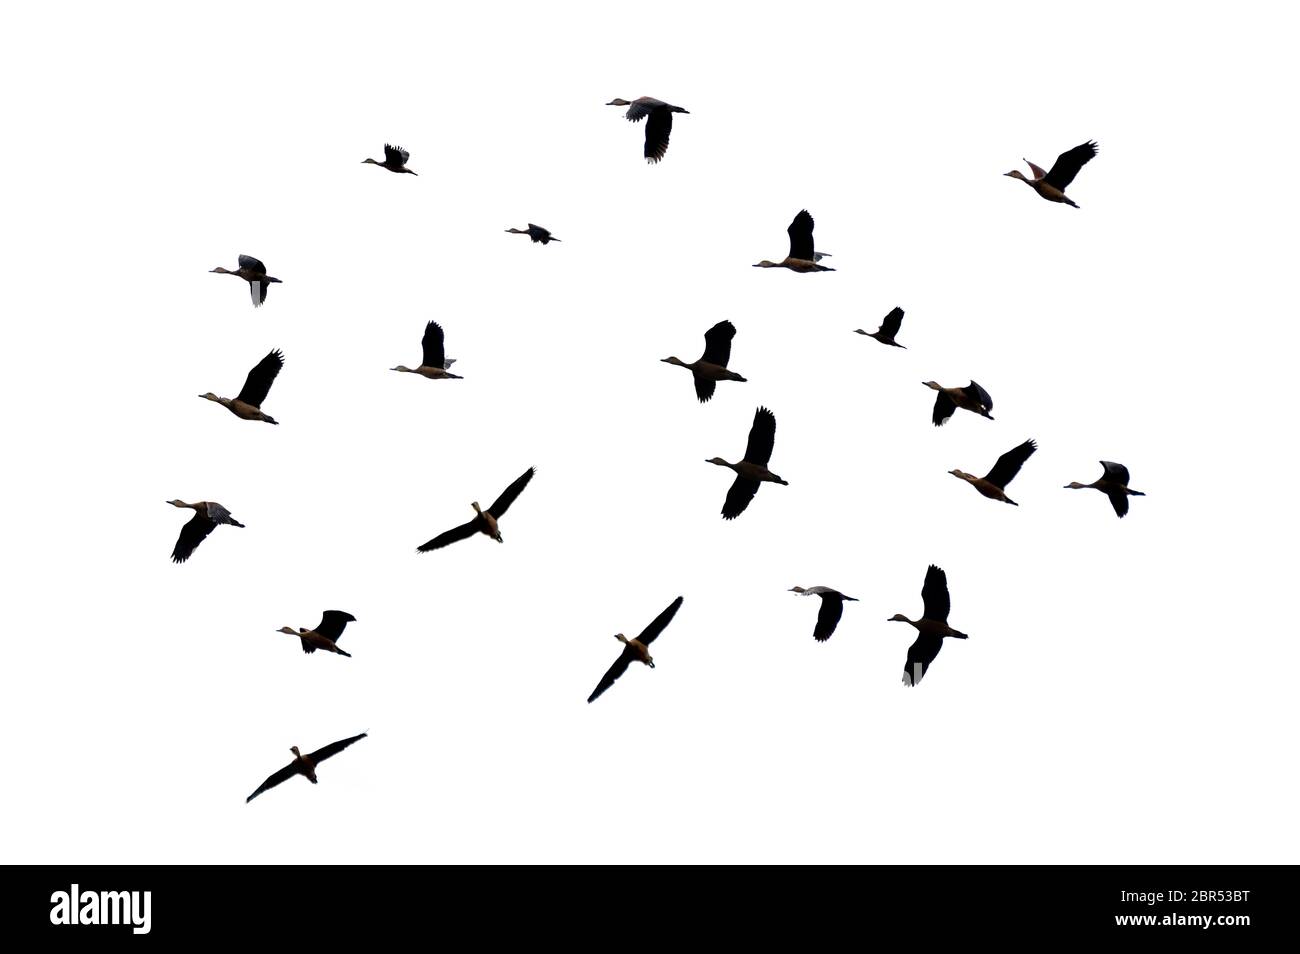 Un grupo de aves volando sobre un fondo blanco aislado Foto de stock